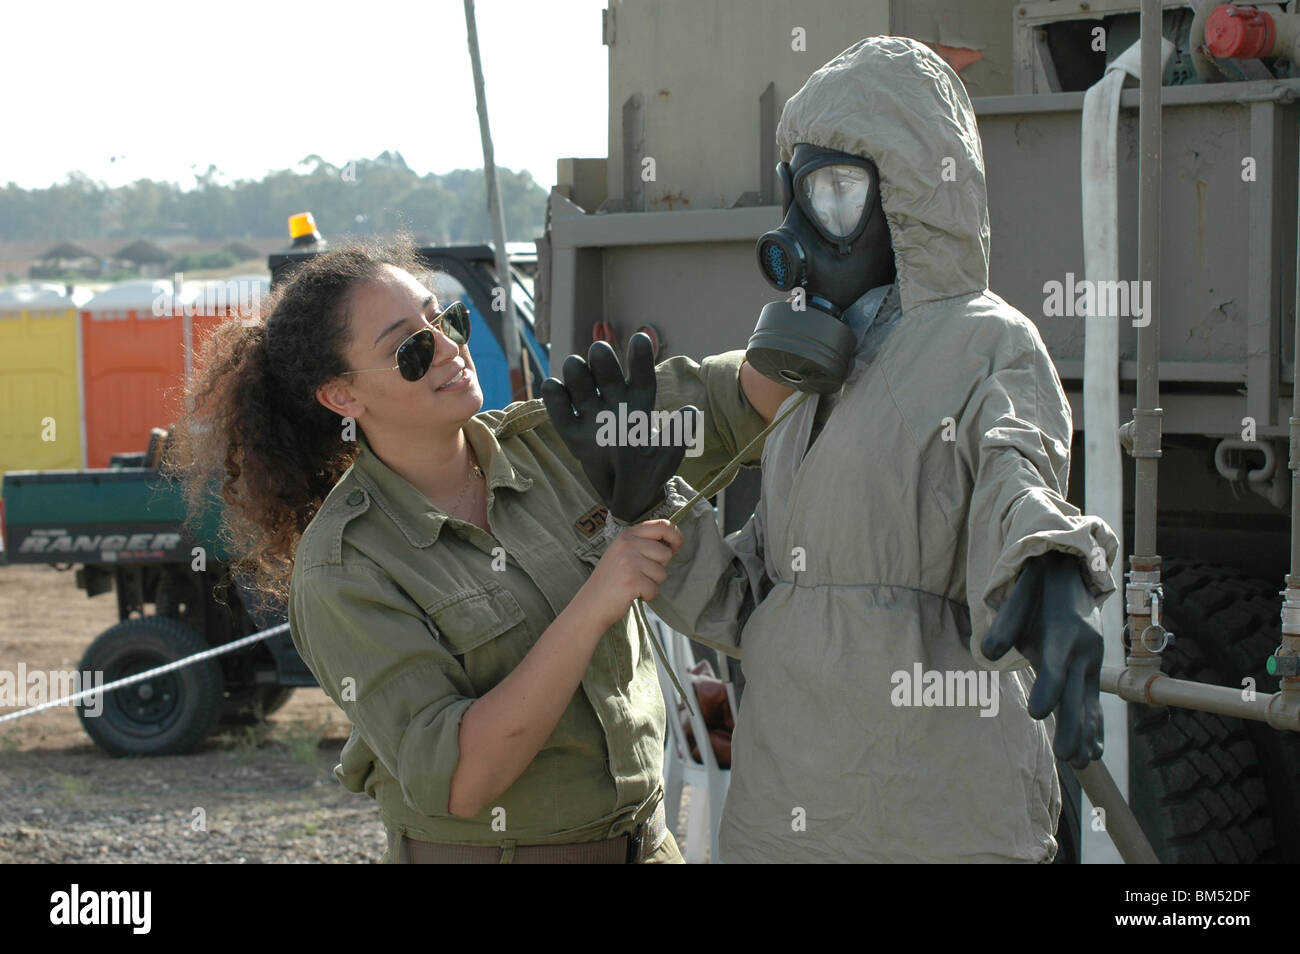 Israel, Tel Nof IAF Basis ein Israeli Air force (IAF) Ausstellung chemische Kriegsführung Schutzkleidung Stockfoto